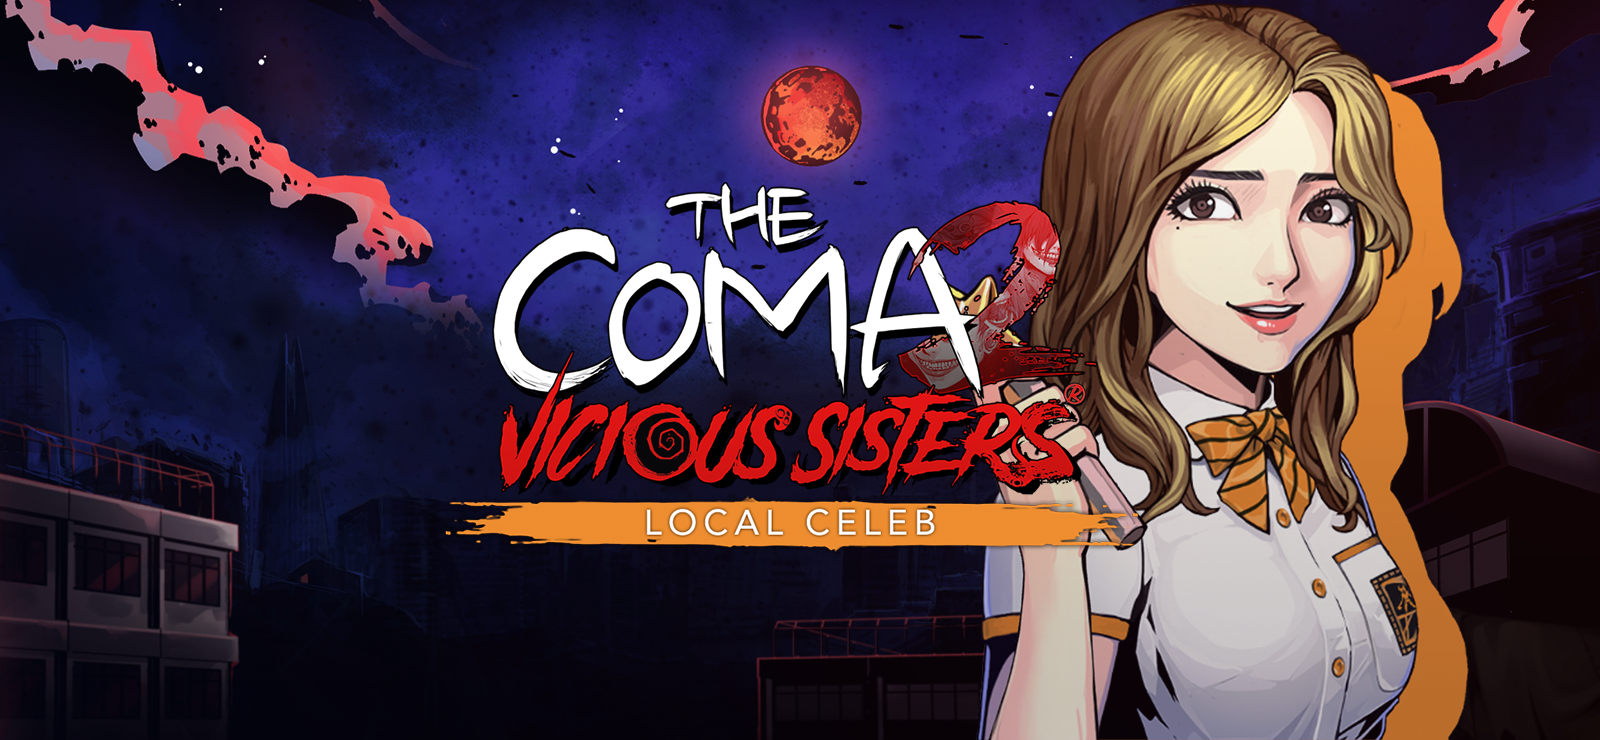 The Coma 2: Vicious Sisters - Mina - Local Celeb Skin